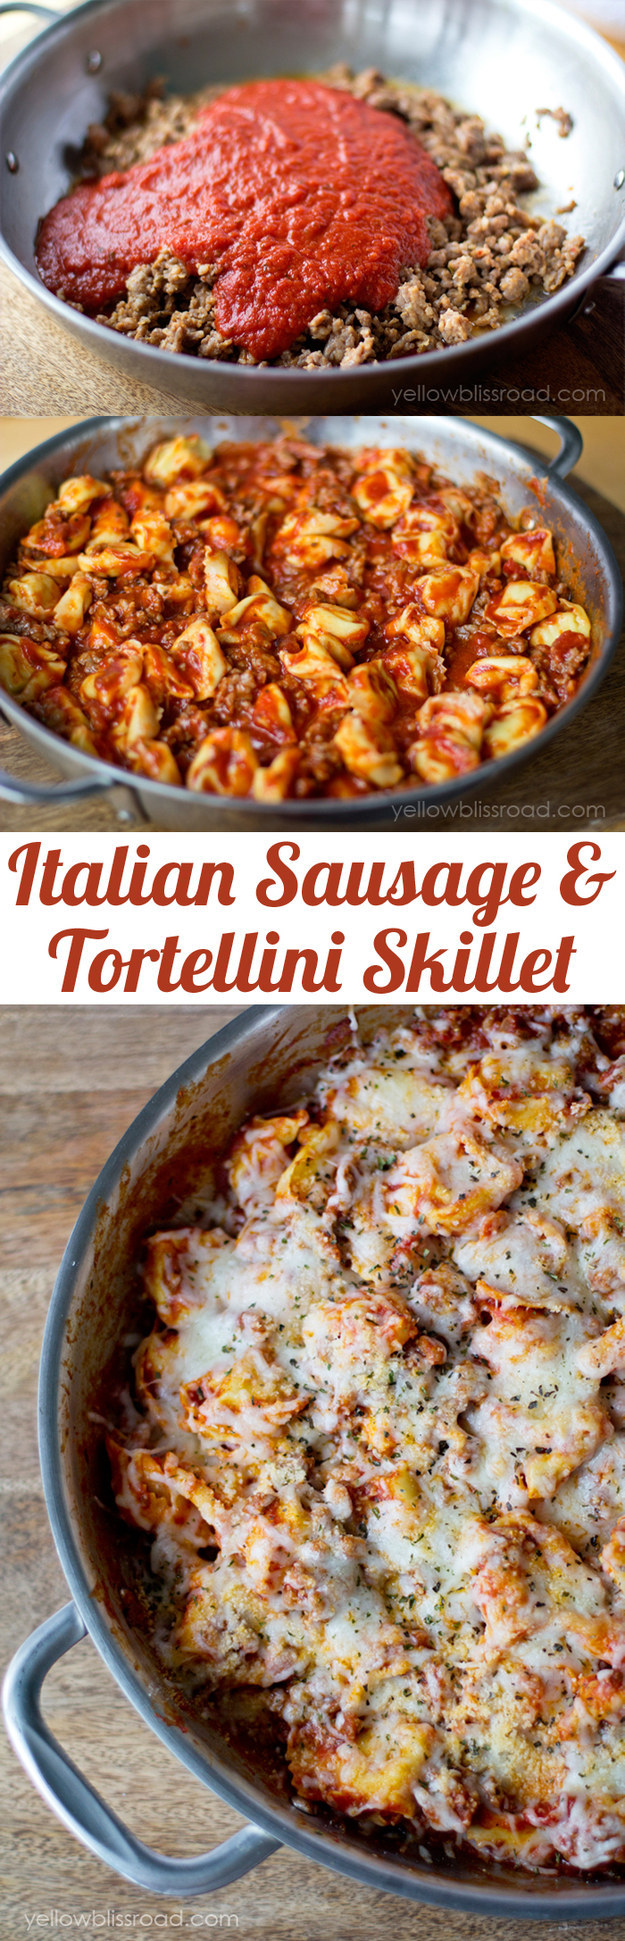 Italian Sausage Tortellini Skillet